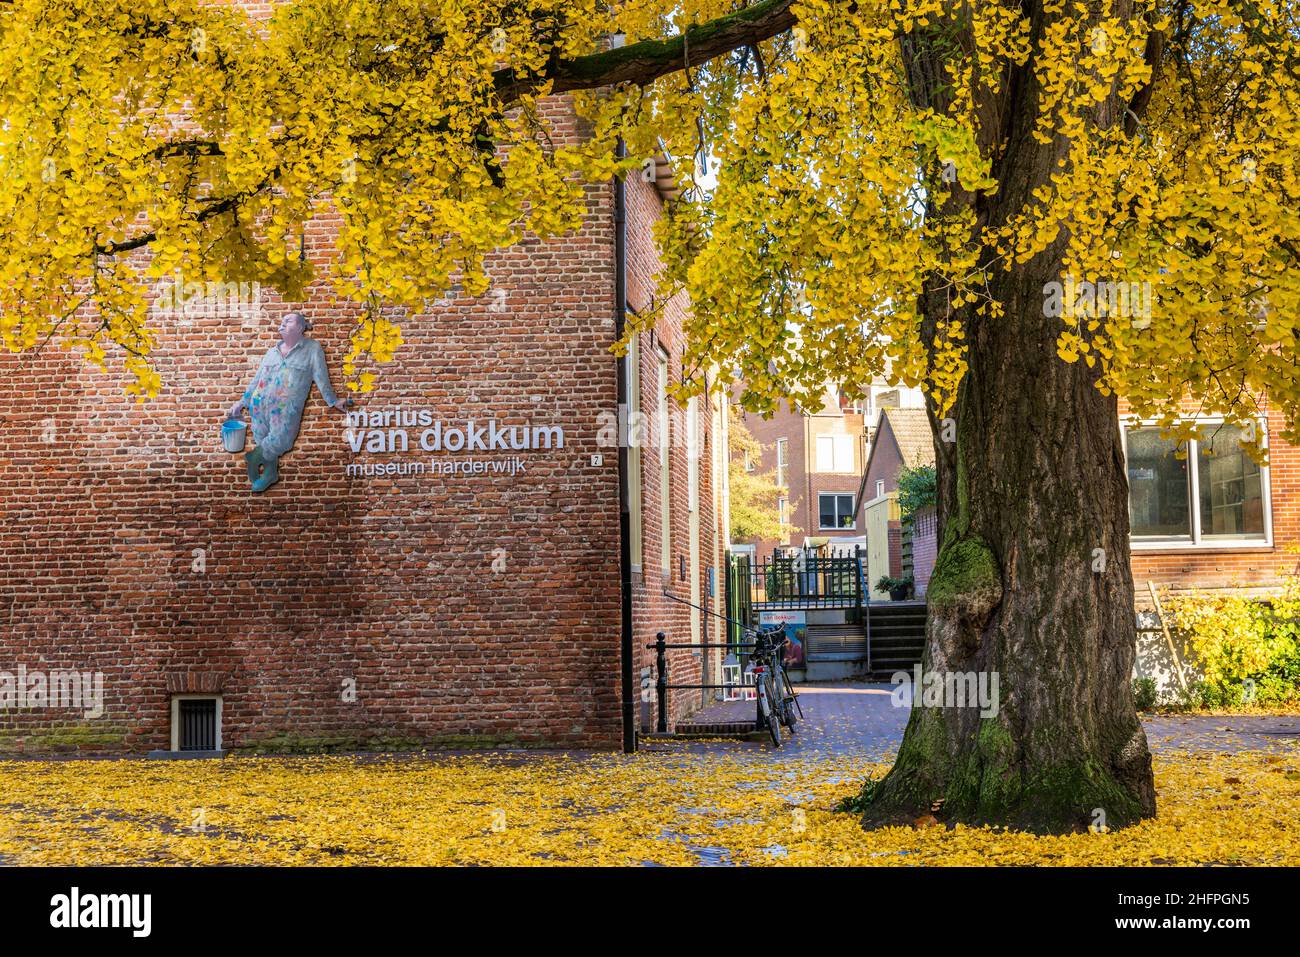 Harderwijk , Niederlande - 13. November 2021: Marinus van Dokkum Museum im mittelalterlichen Zentrum von Hardewijk, Gelderland in den Niederlanden Stockfoto